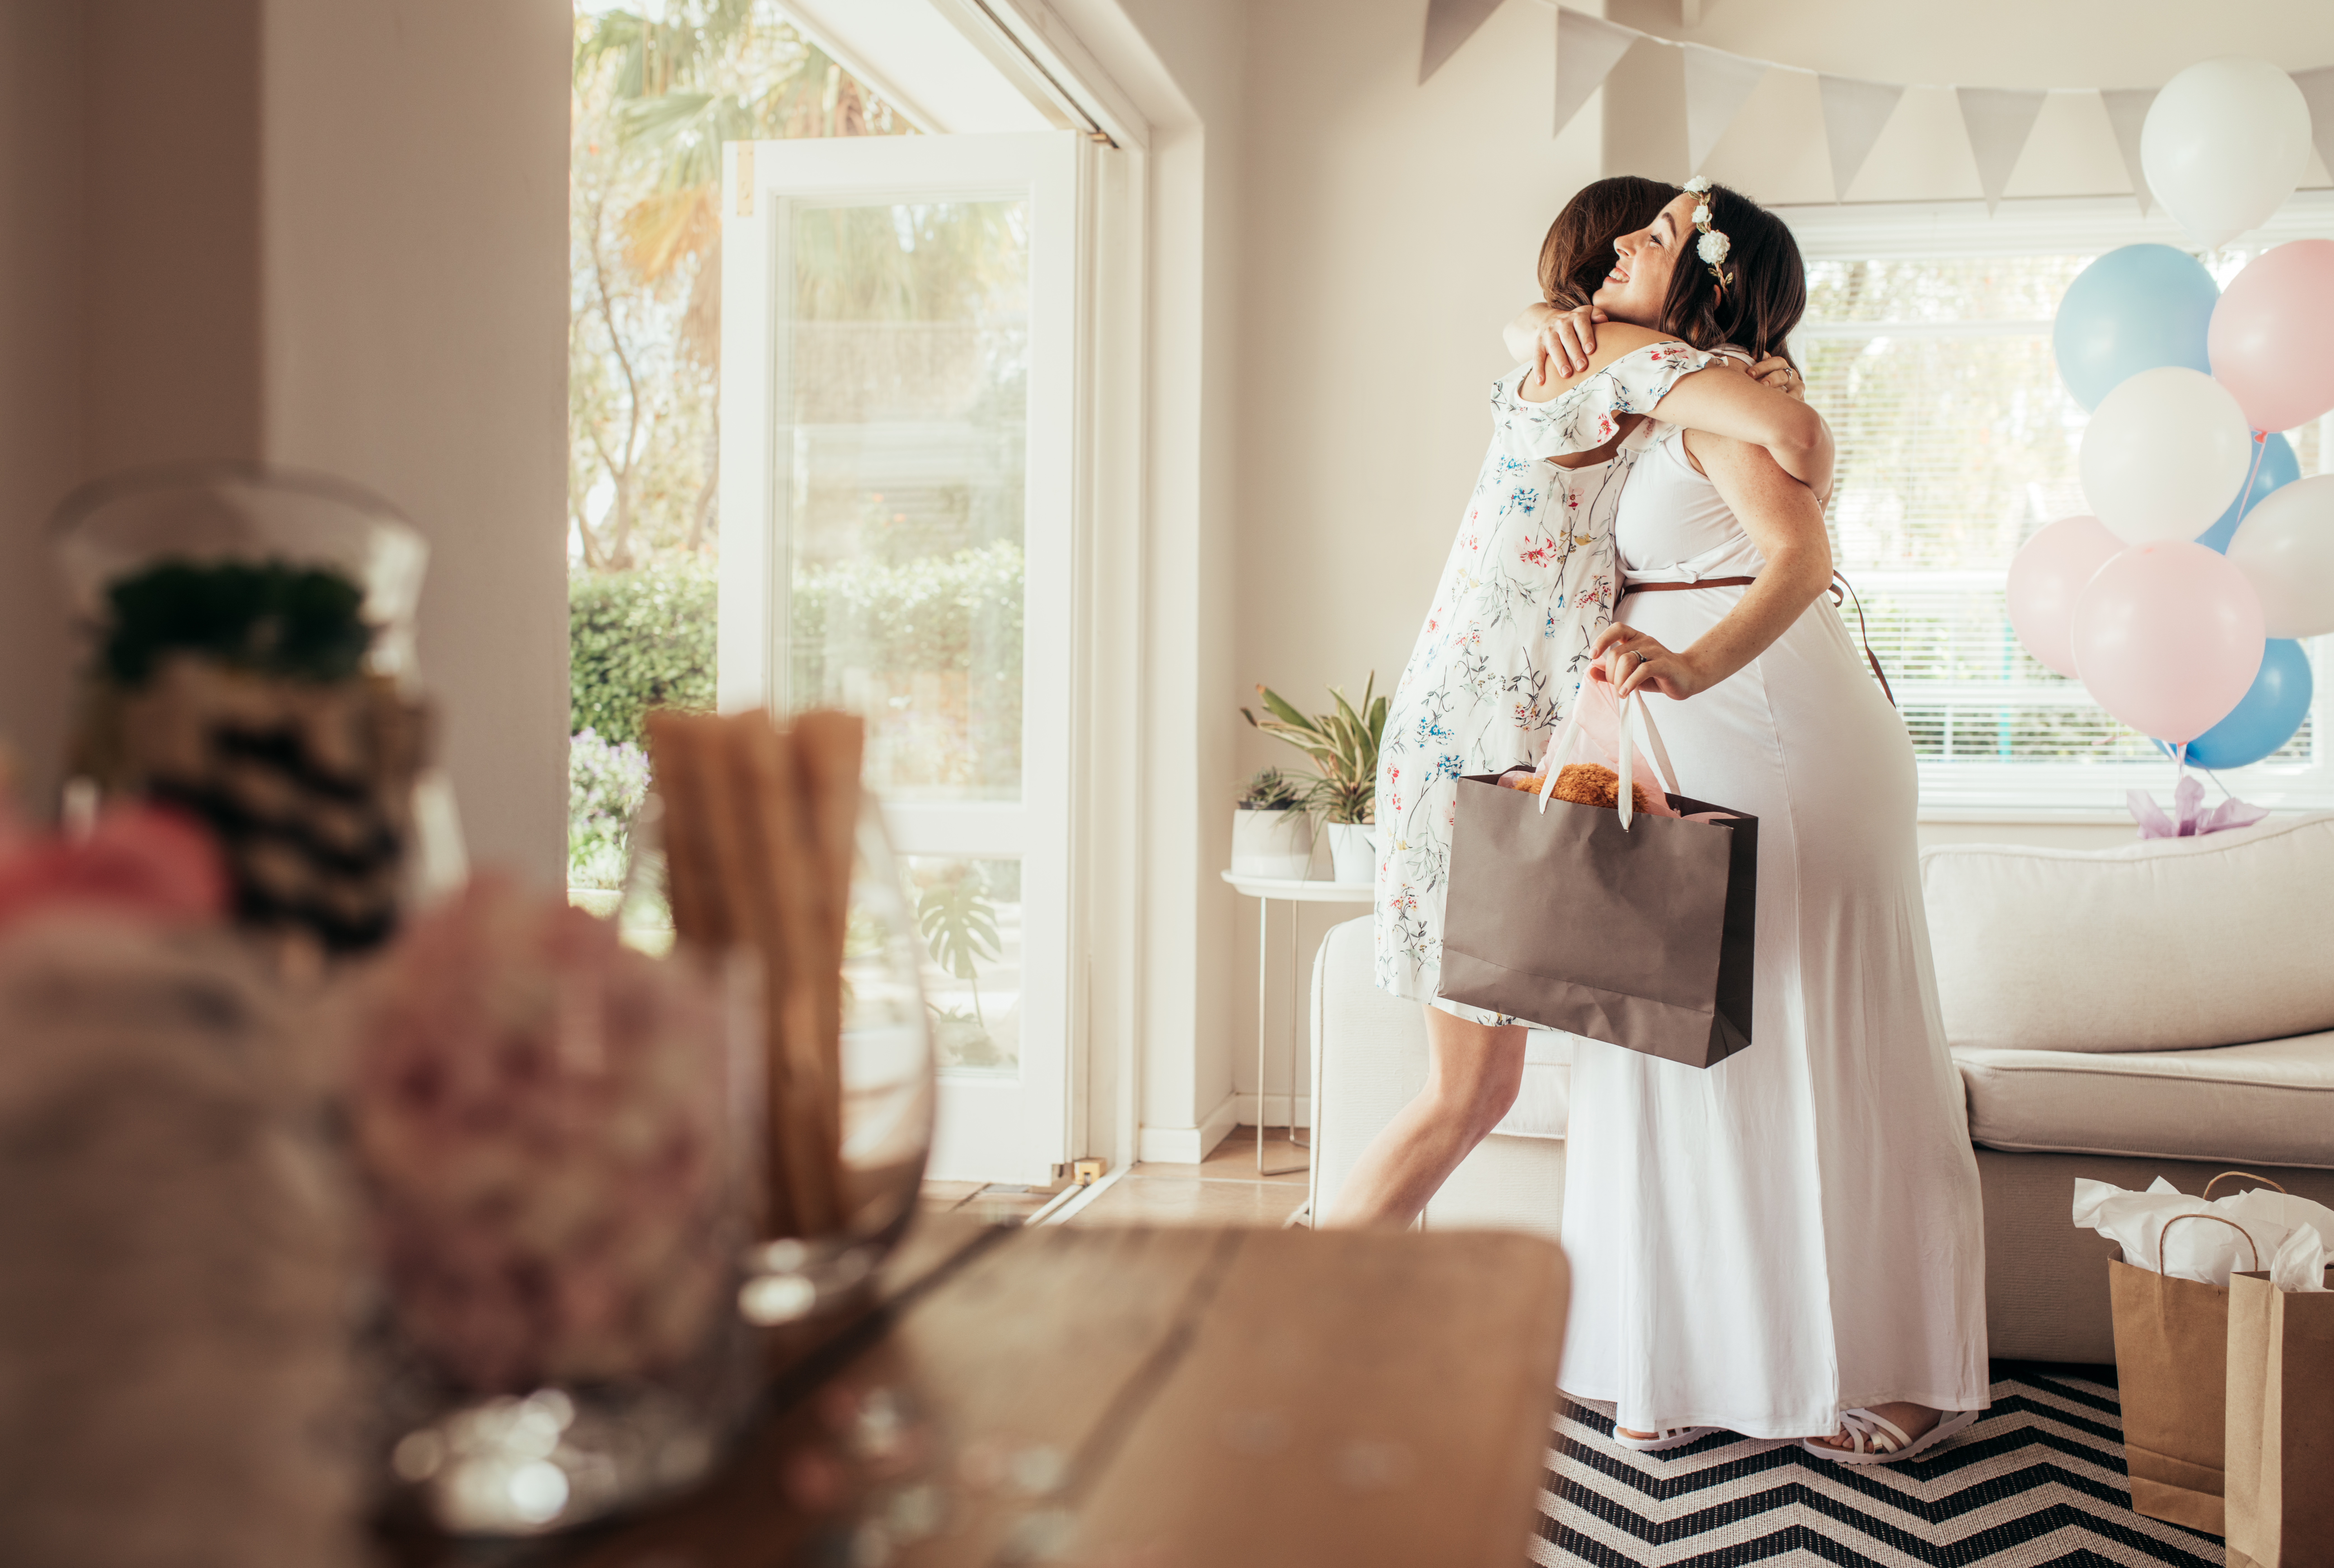 Mujer abrazando a futura madre | Foto: Shutterstock